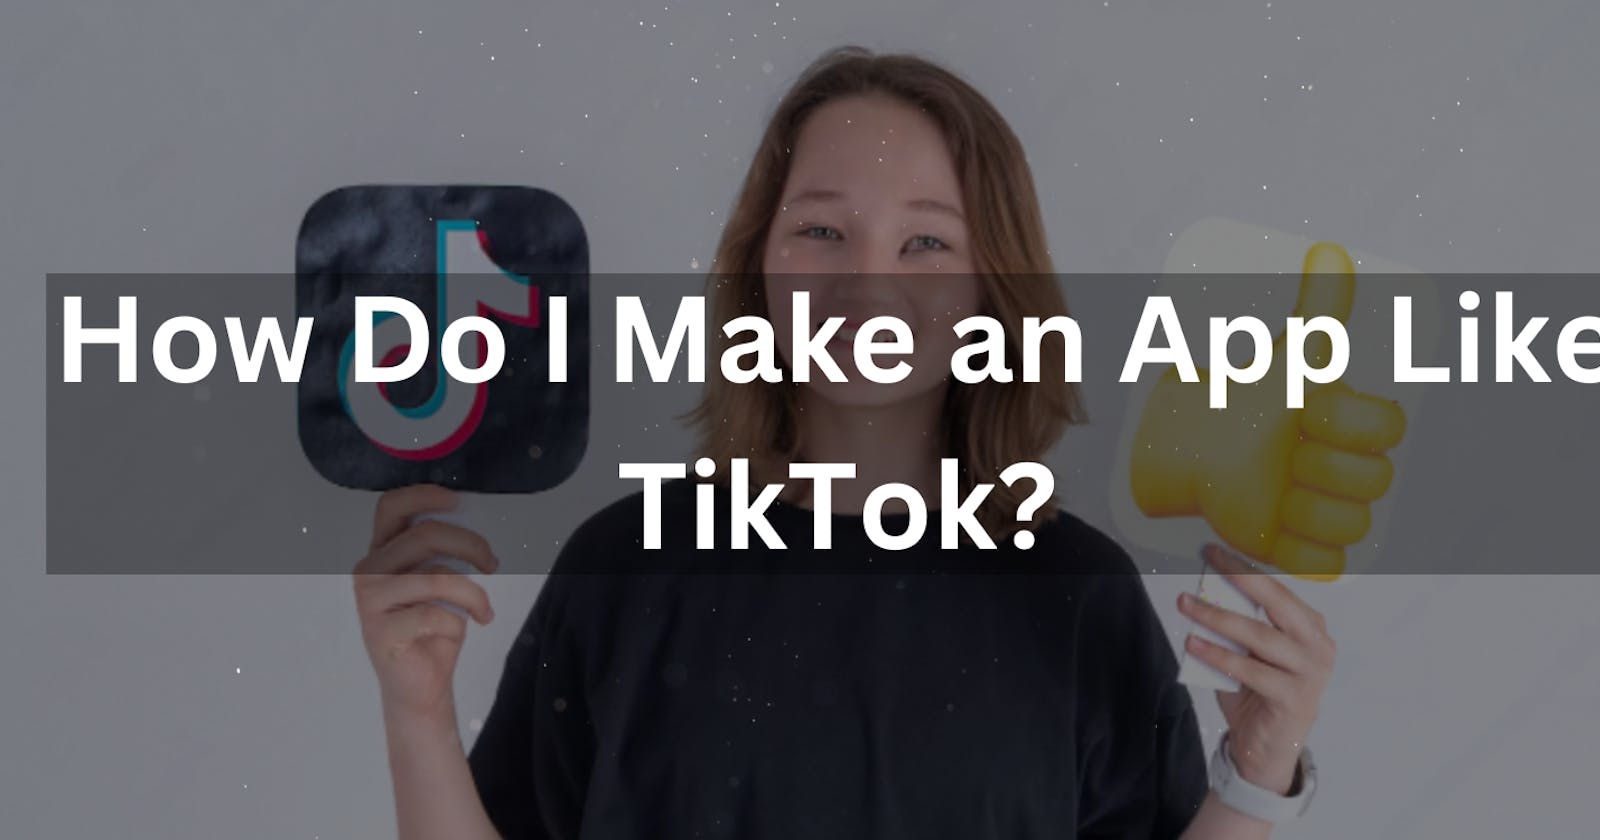 How do I make an app like TikTok?